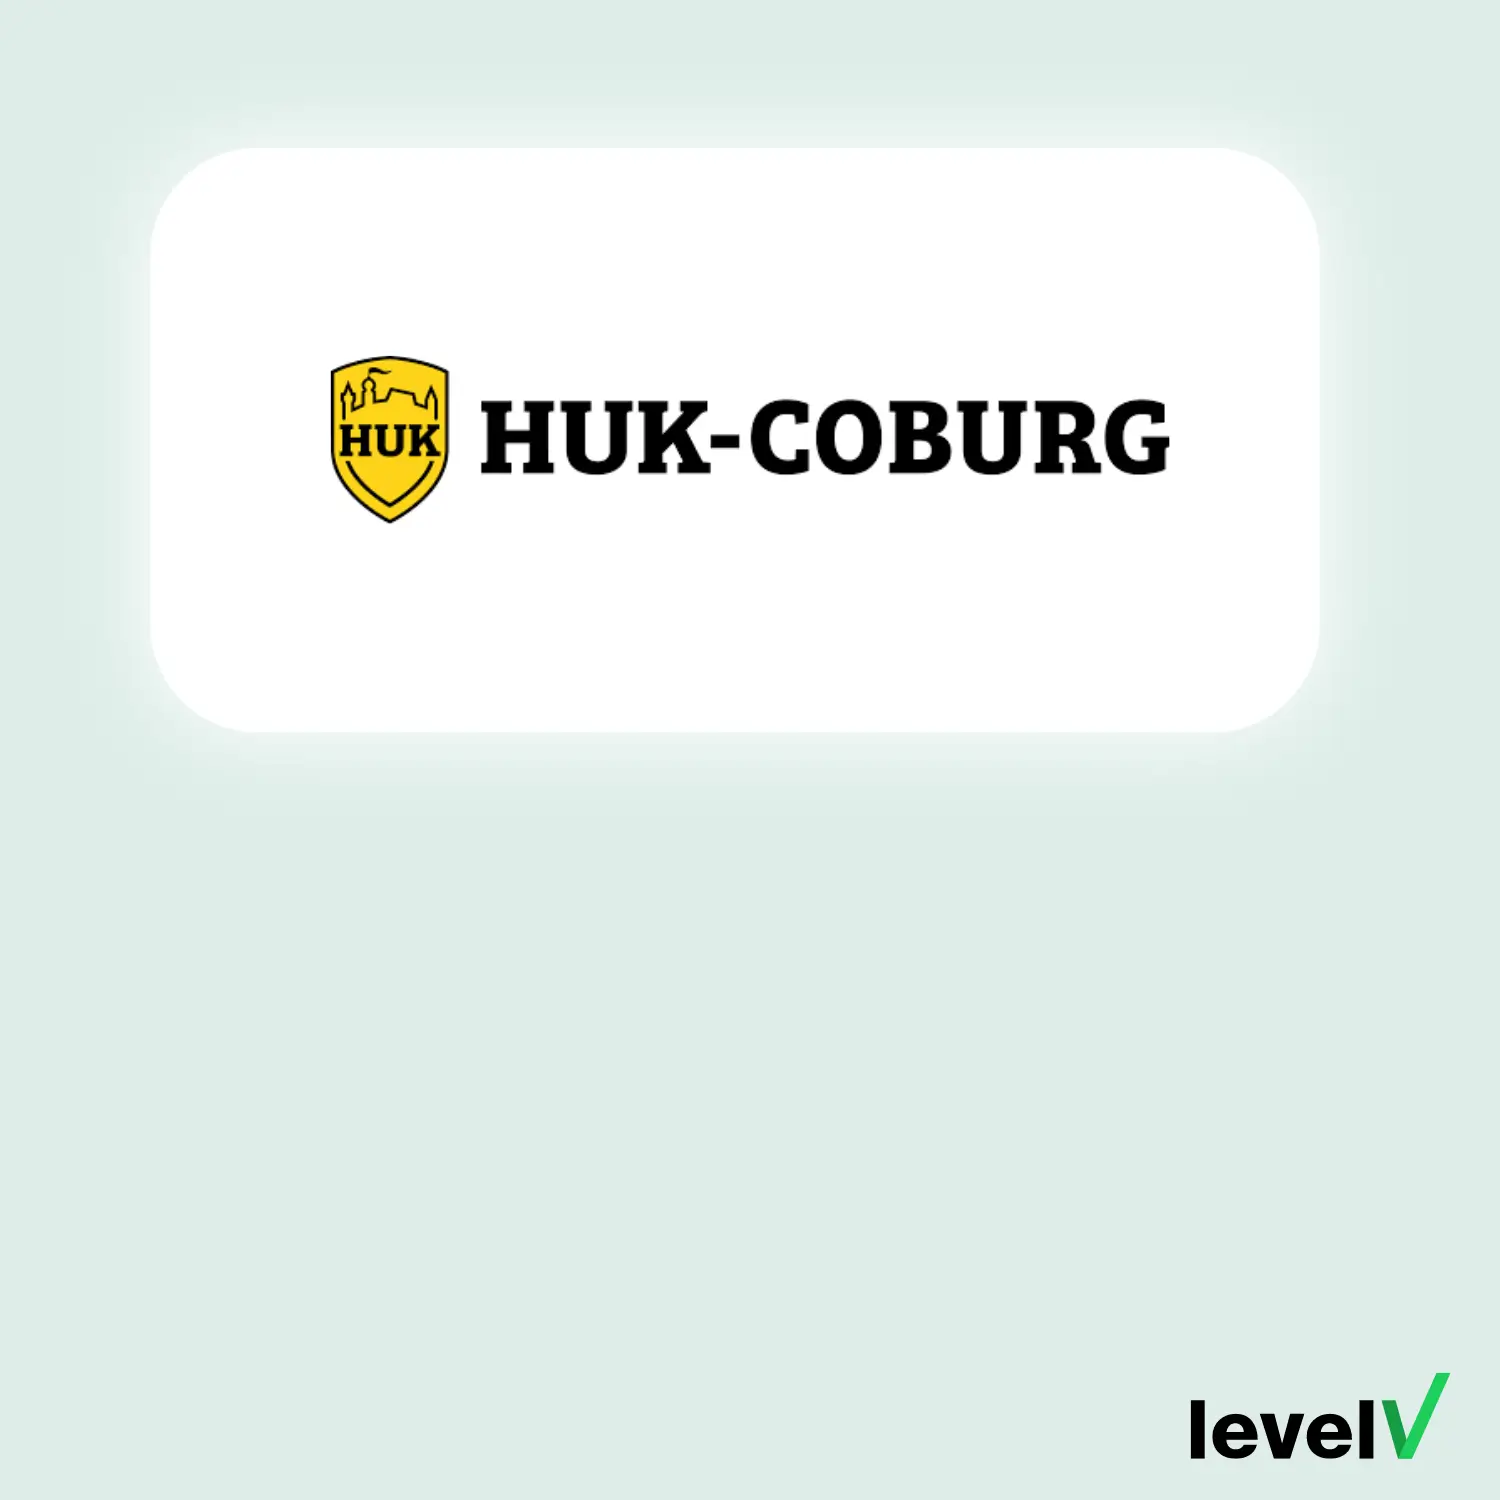 Huk Coburg